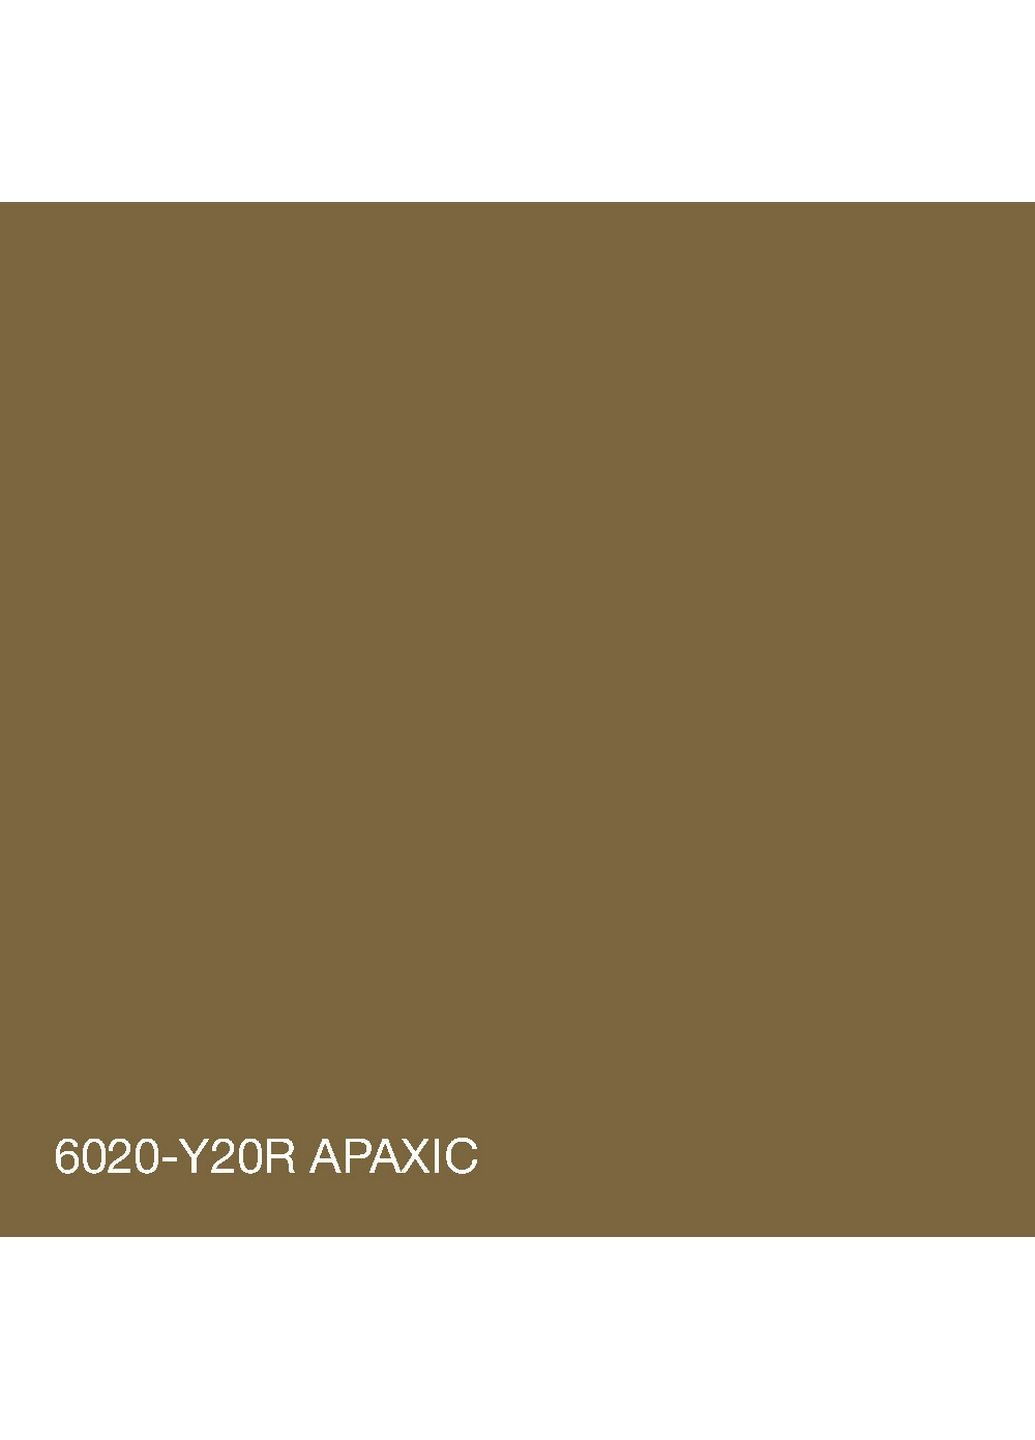 Фасадная краска акрил-латексная 6020-Y20R 5 л SkyLine (283326578)